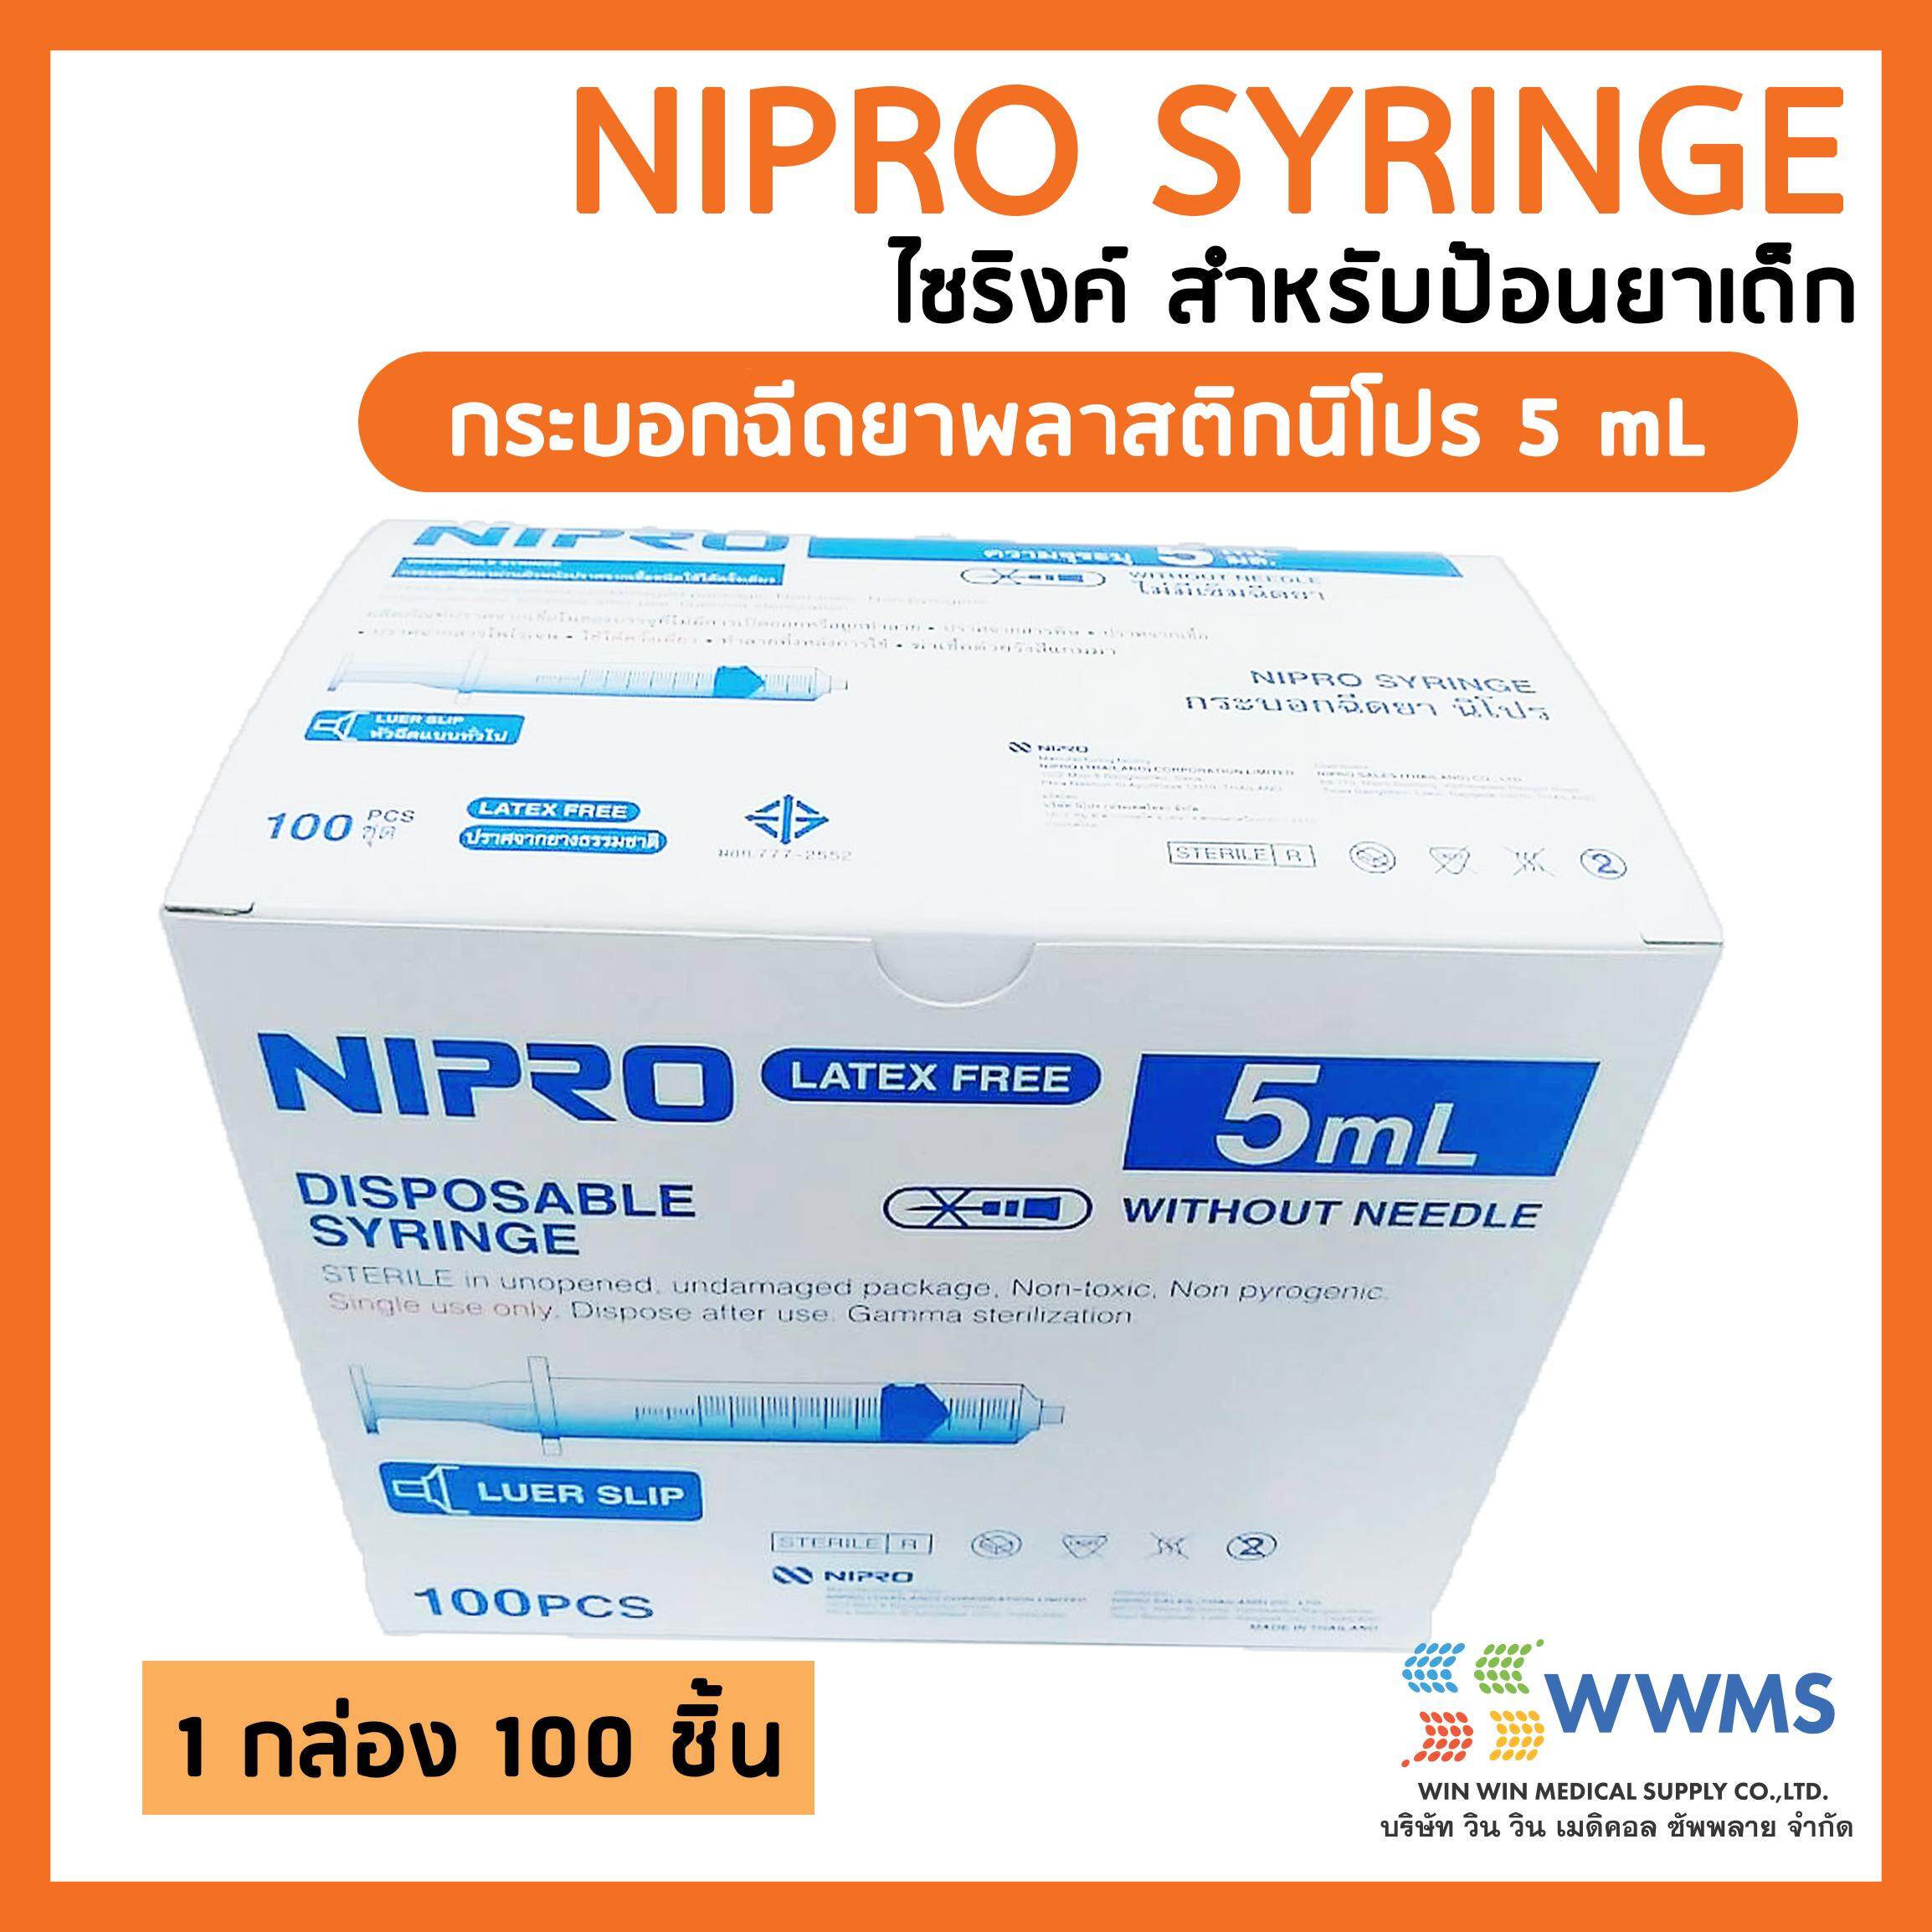   ส่งฟรี   NIPRO SYRINGE กระบอกฉีดยาพลาสติก นิโปร ไม่มีเข็ม (ไซริงค์) ขนาด 5 ml. 1 กล่อง 100 ชิ้น ไม่มีเข็ม (สามารถใช้ป้อนยาเด็กได้)